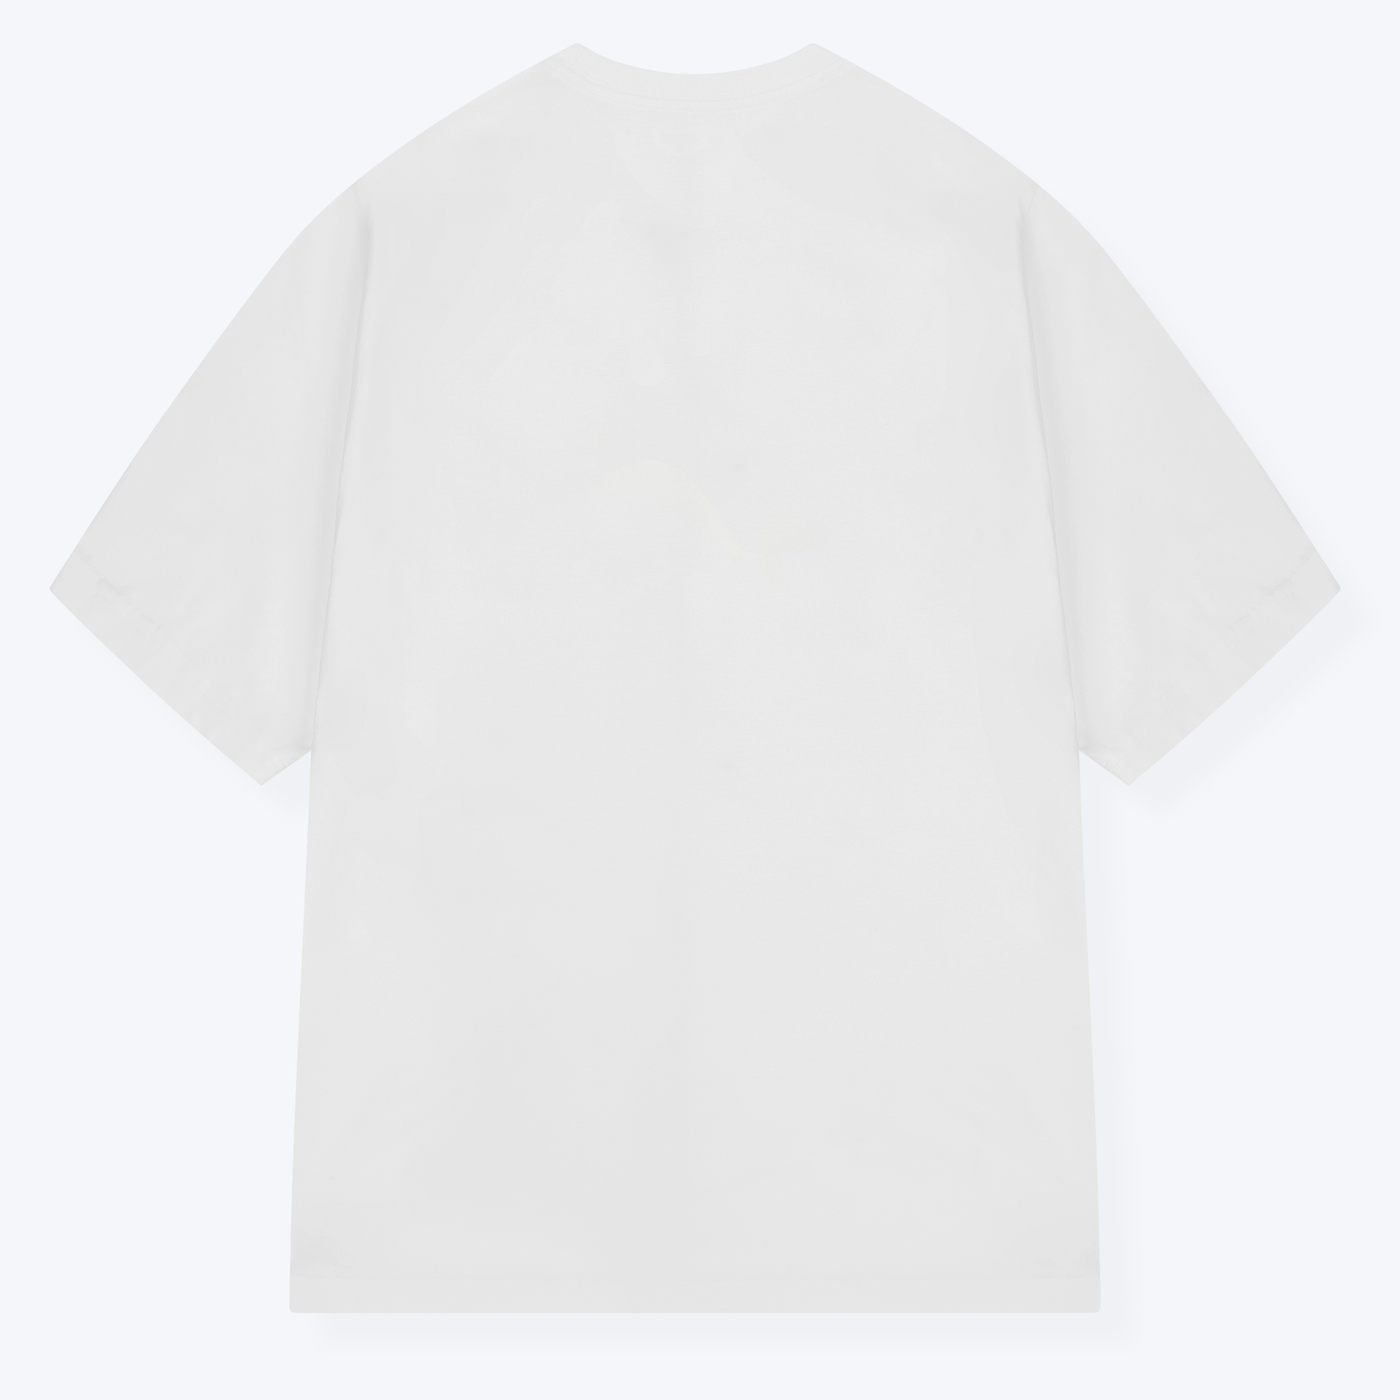 Taschen Grantler T-Shirt weiß